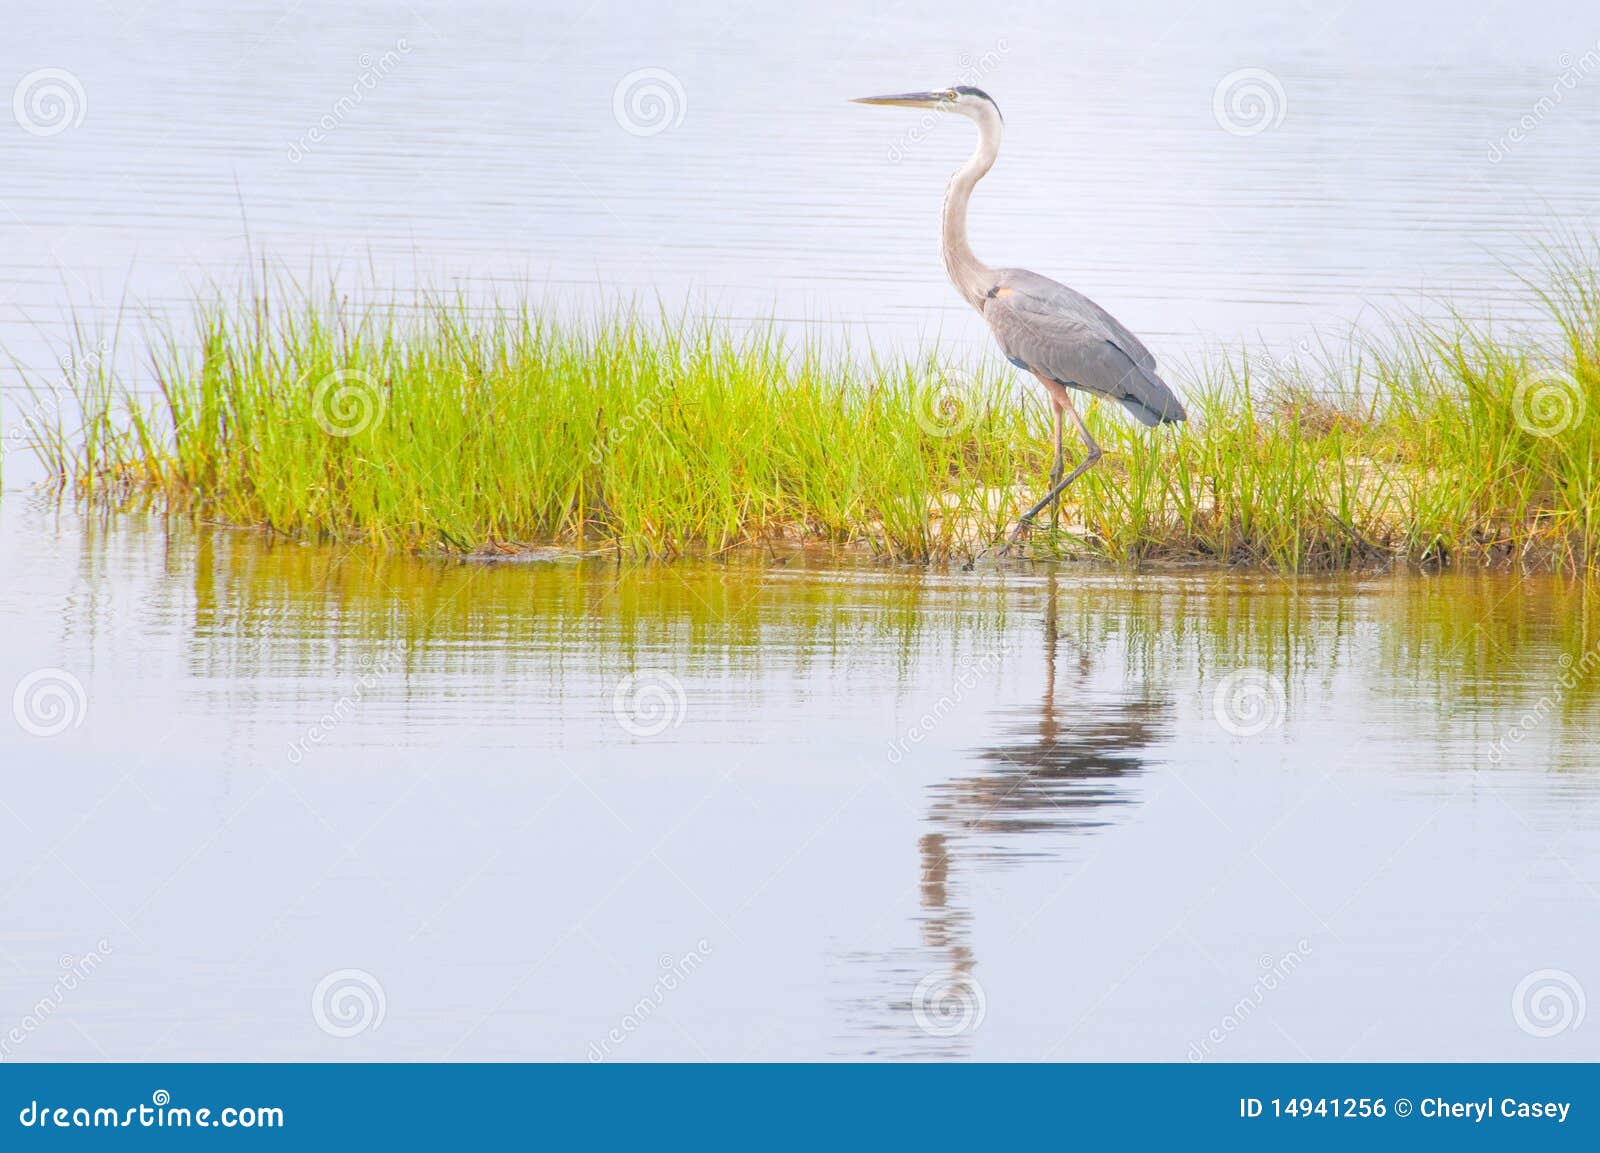 blue heron in marsh